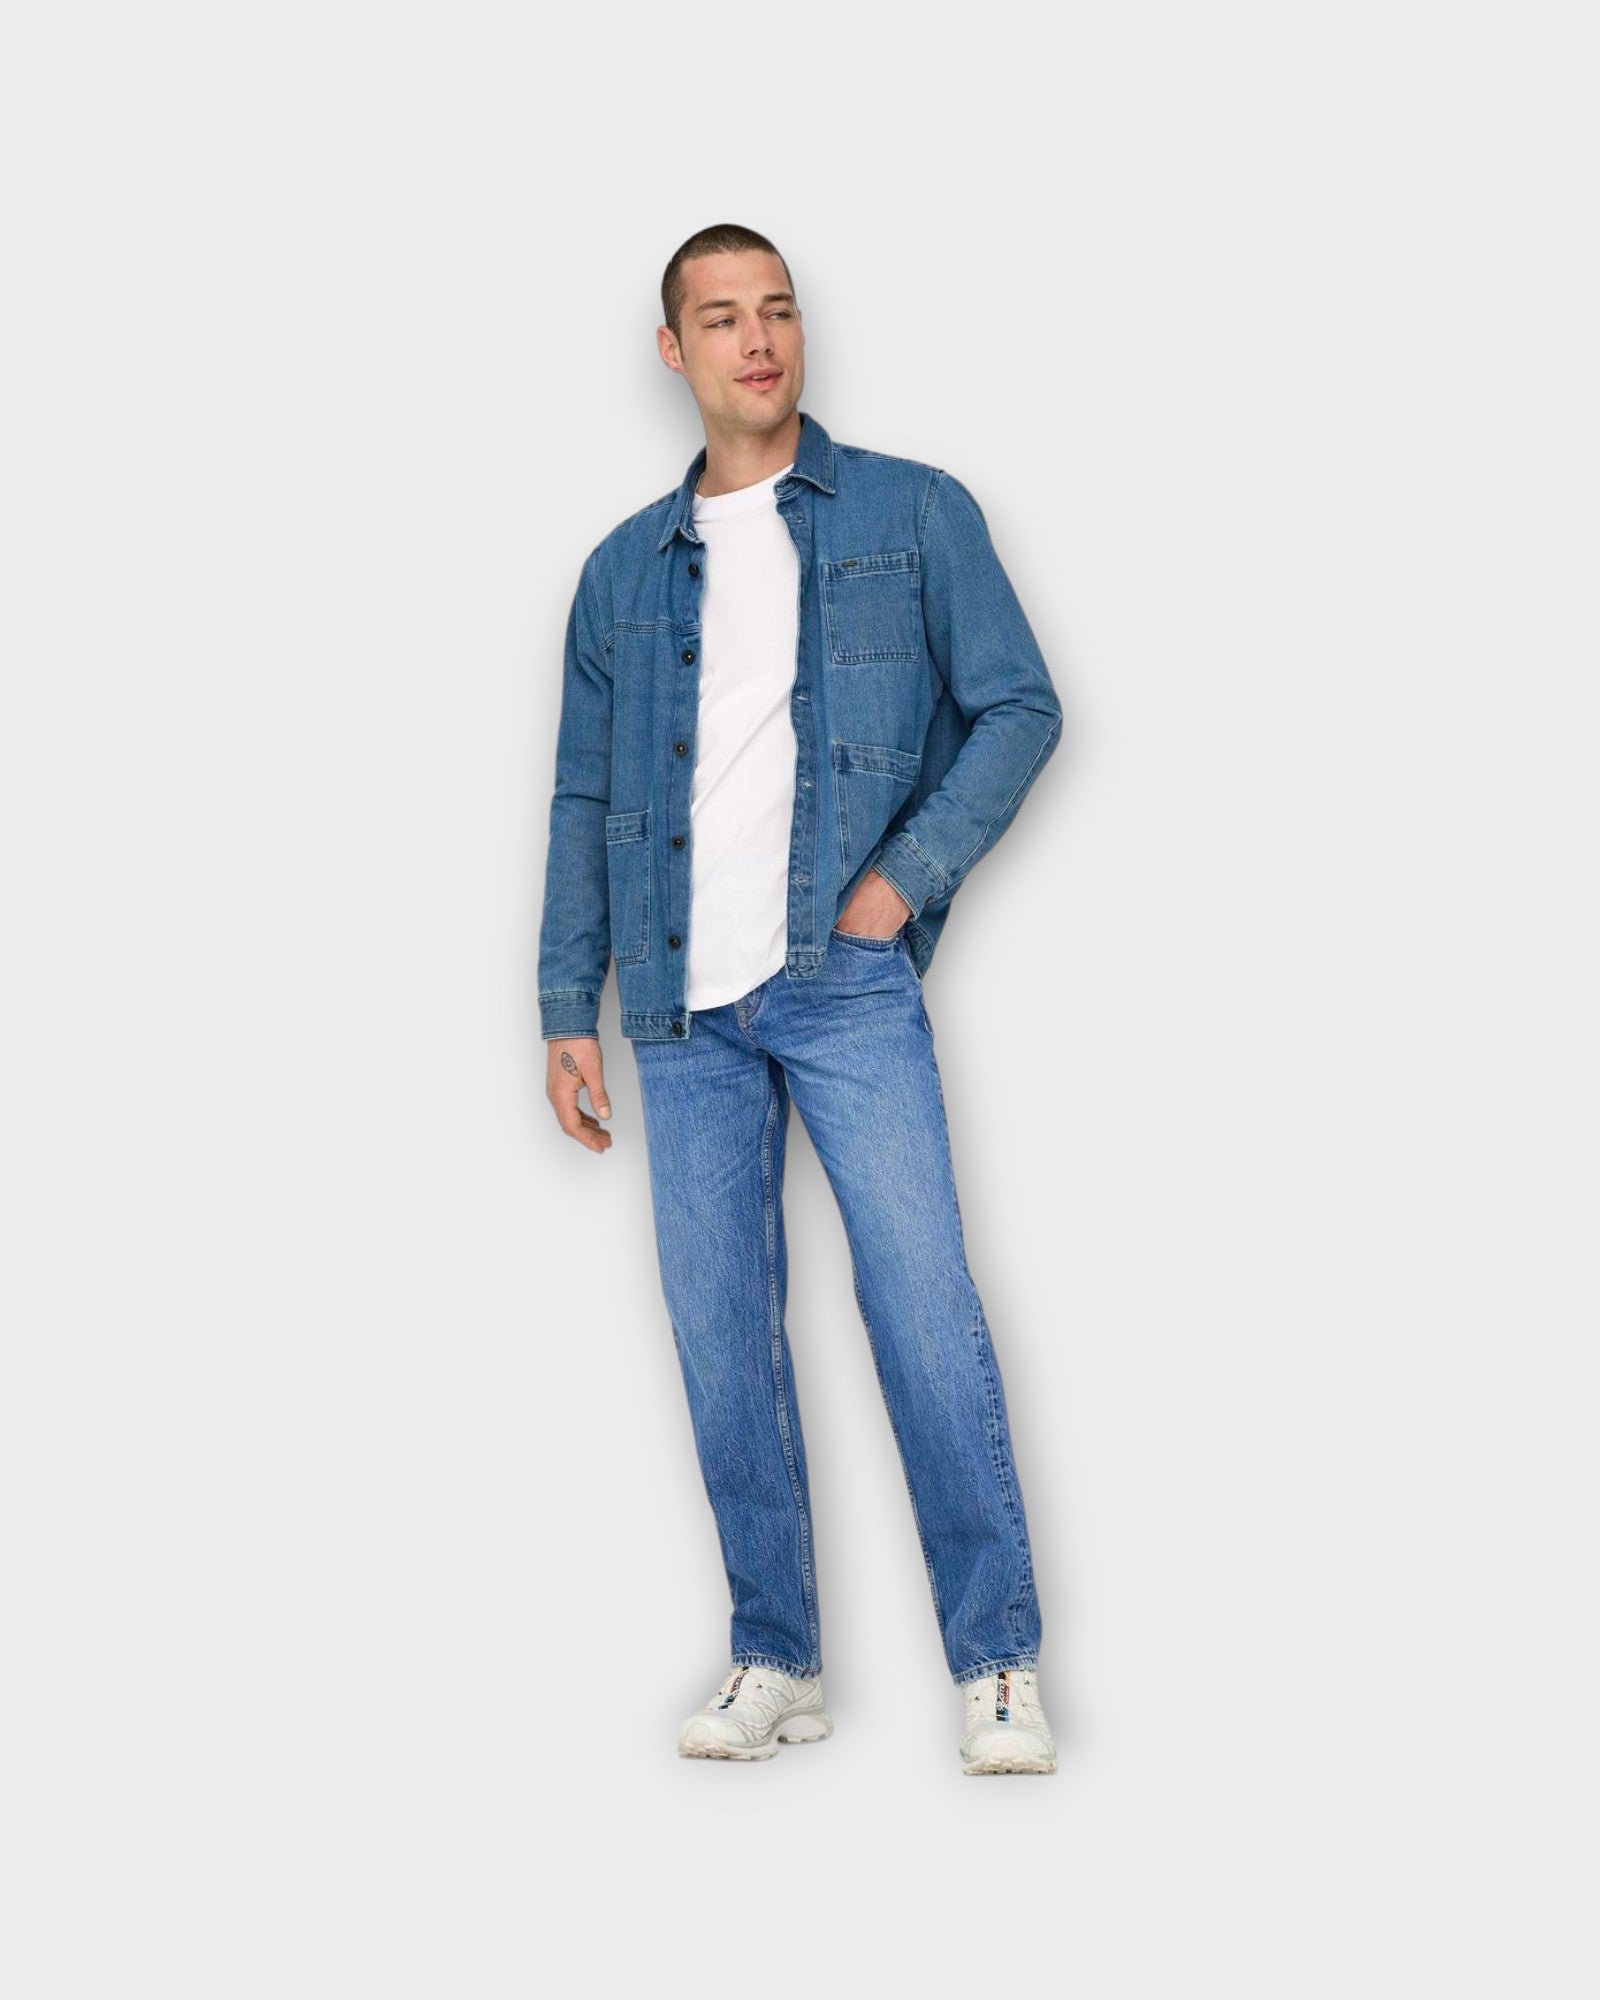 Edge Straight Bromo 0017 Bright Blue Denim fra Only and Sons. Baggy fit jeans til mænd. Her set på model forfra.